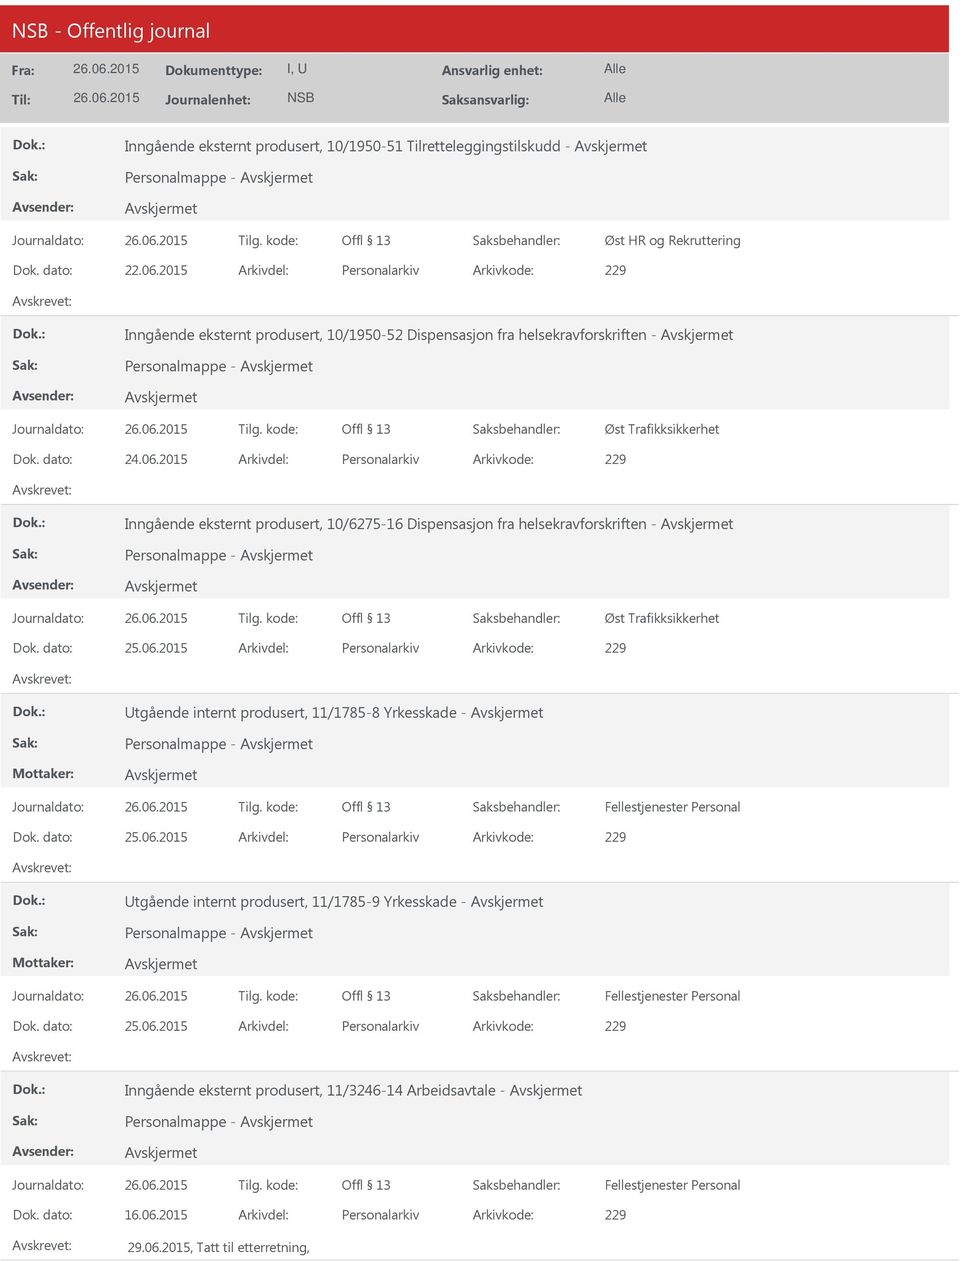 2015 Arkivdel: Personalarkiv Arkivkode: 229 Inngående eksternt produsert, 10/6275-16 Dispensasjon fra helsekravforskriften - Øst Trafikksikkerhet tgående internt